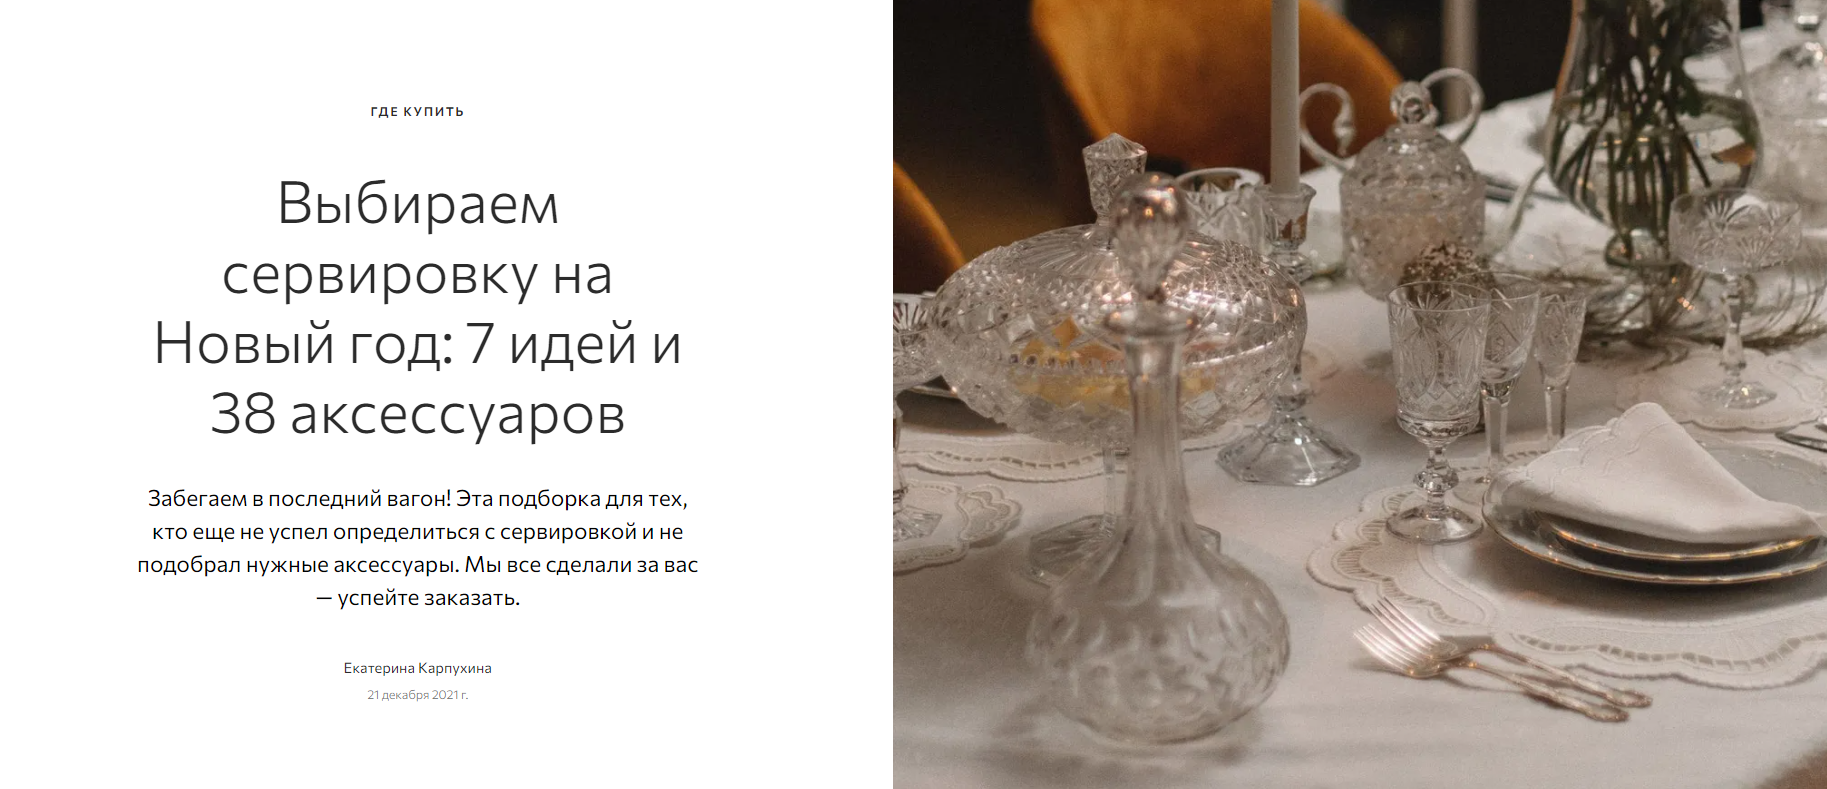 admagazine.ru: скатерть Tkano в подборке "Выбираем сервировку на Новый год: 7 идей и 38 аксессуаров"